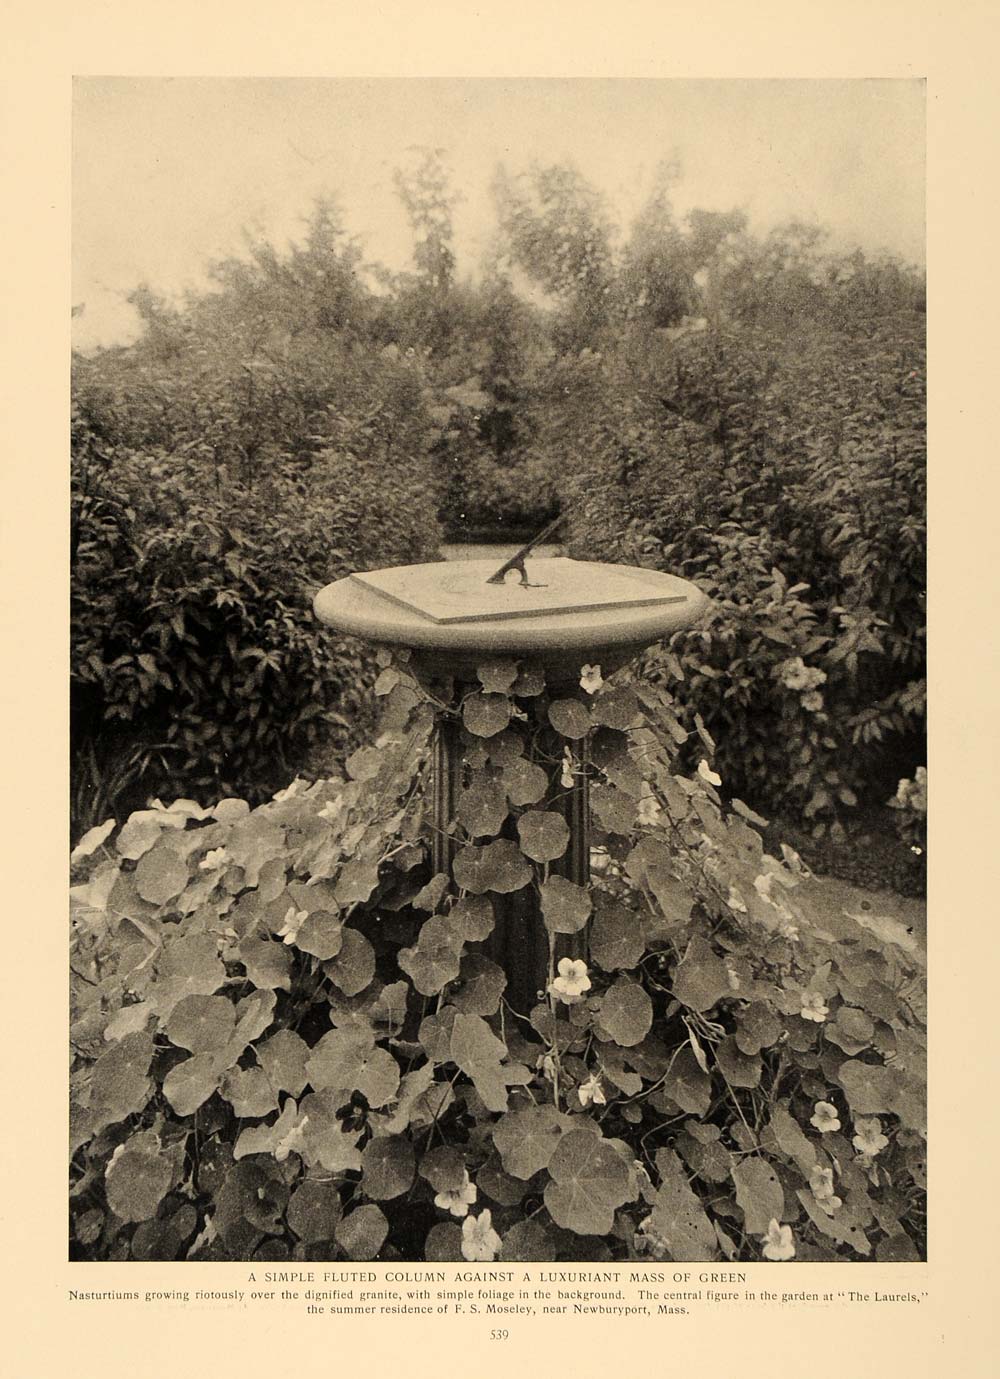 1906 Article Sun Dial Pedestal Garden Decor Walter Dyer - ORIGINAL CL5